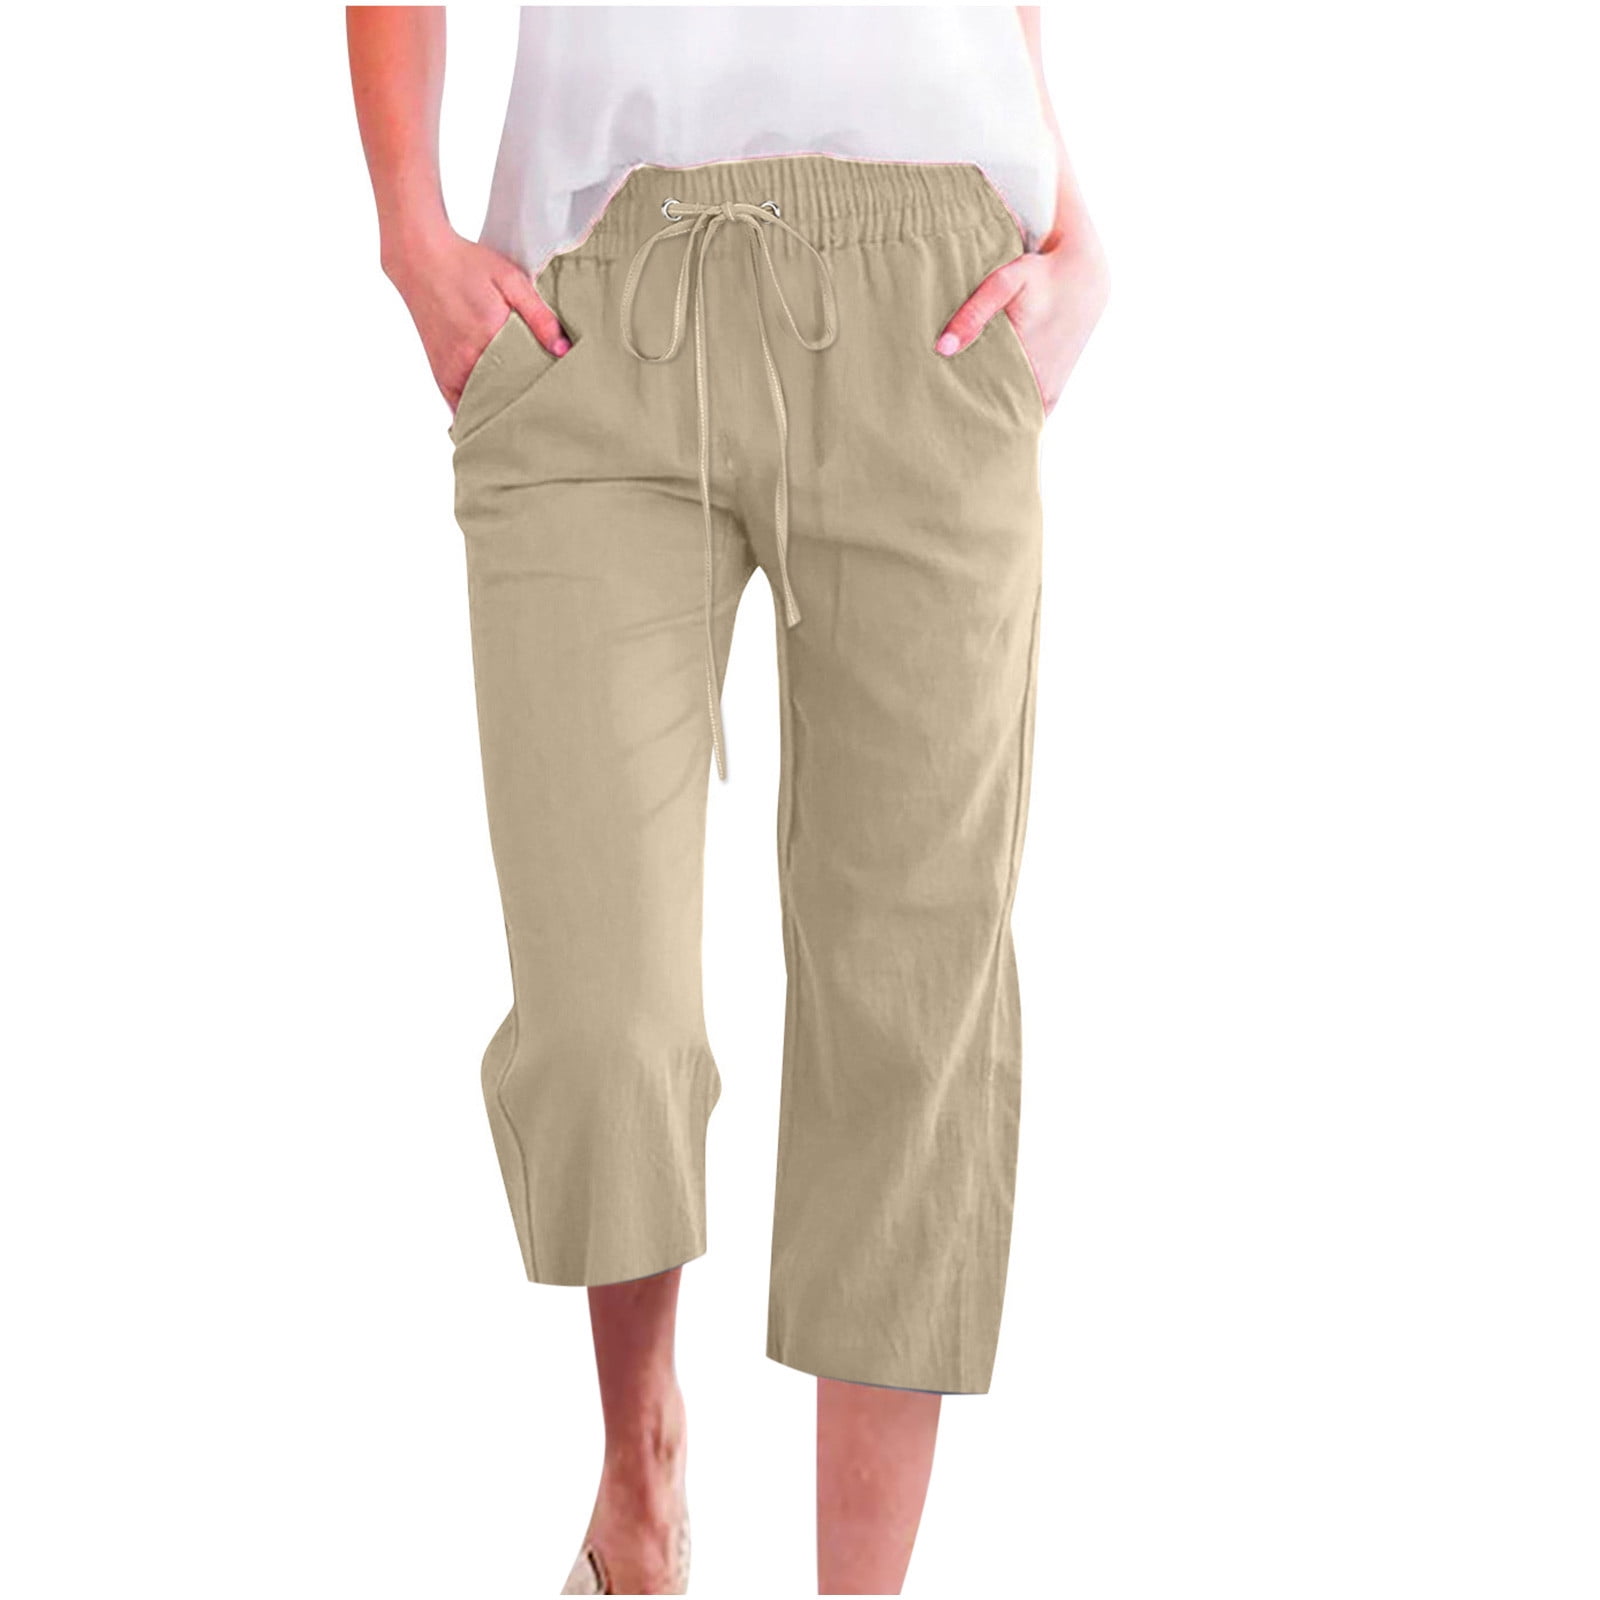 Summer Capri Pants for Women Cotton Linen Solid Color Capris Slacks Elastic  Waist Casual Wide Leg Lounge Pants